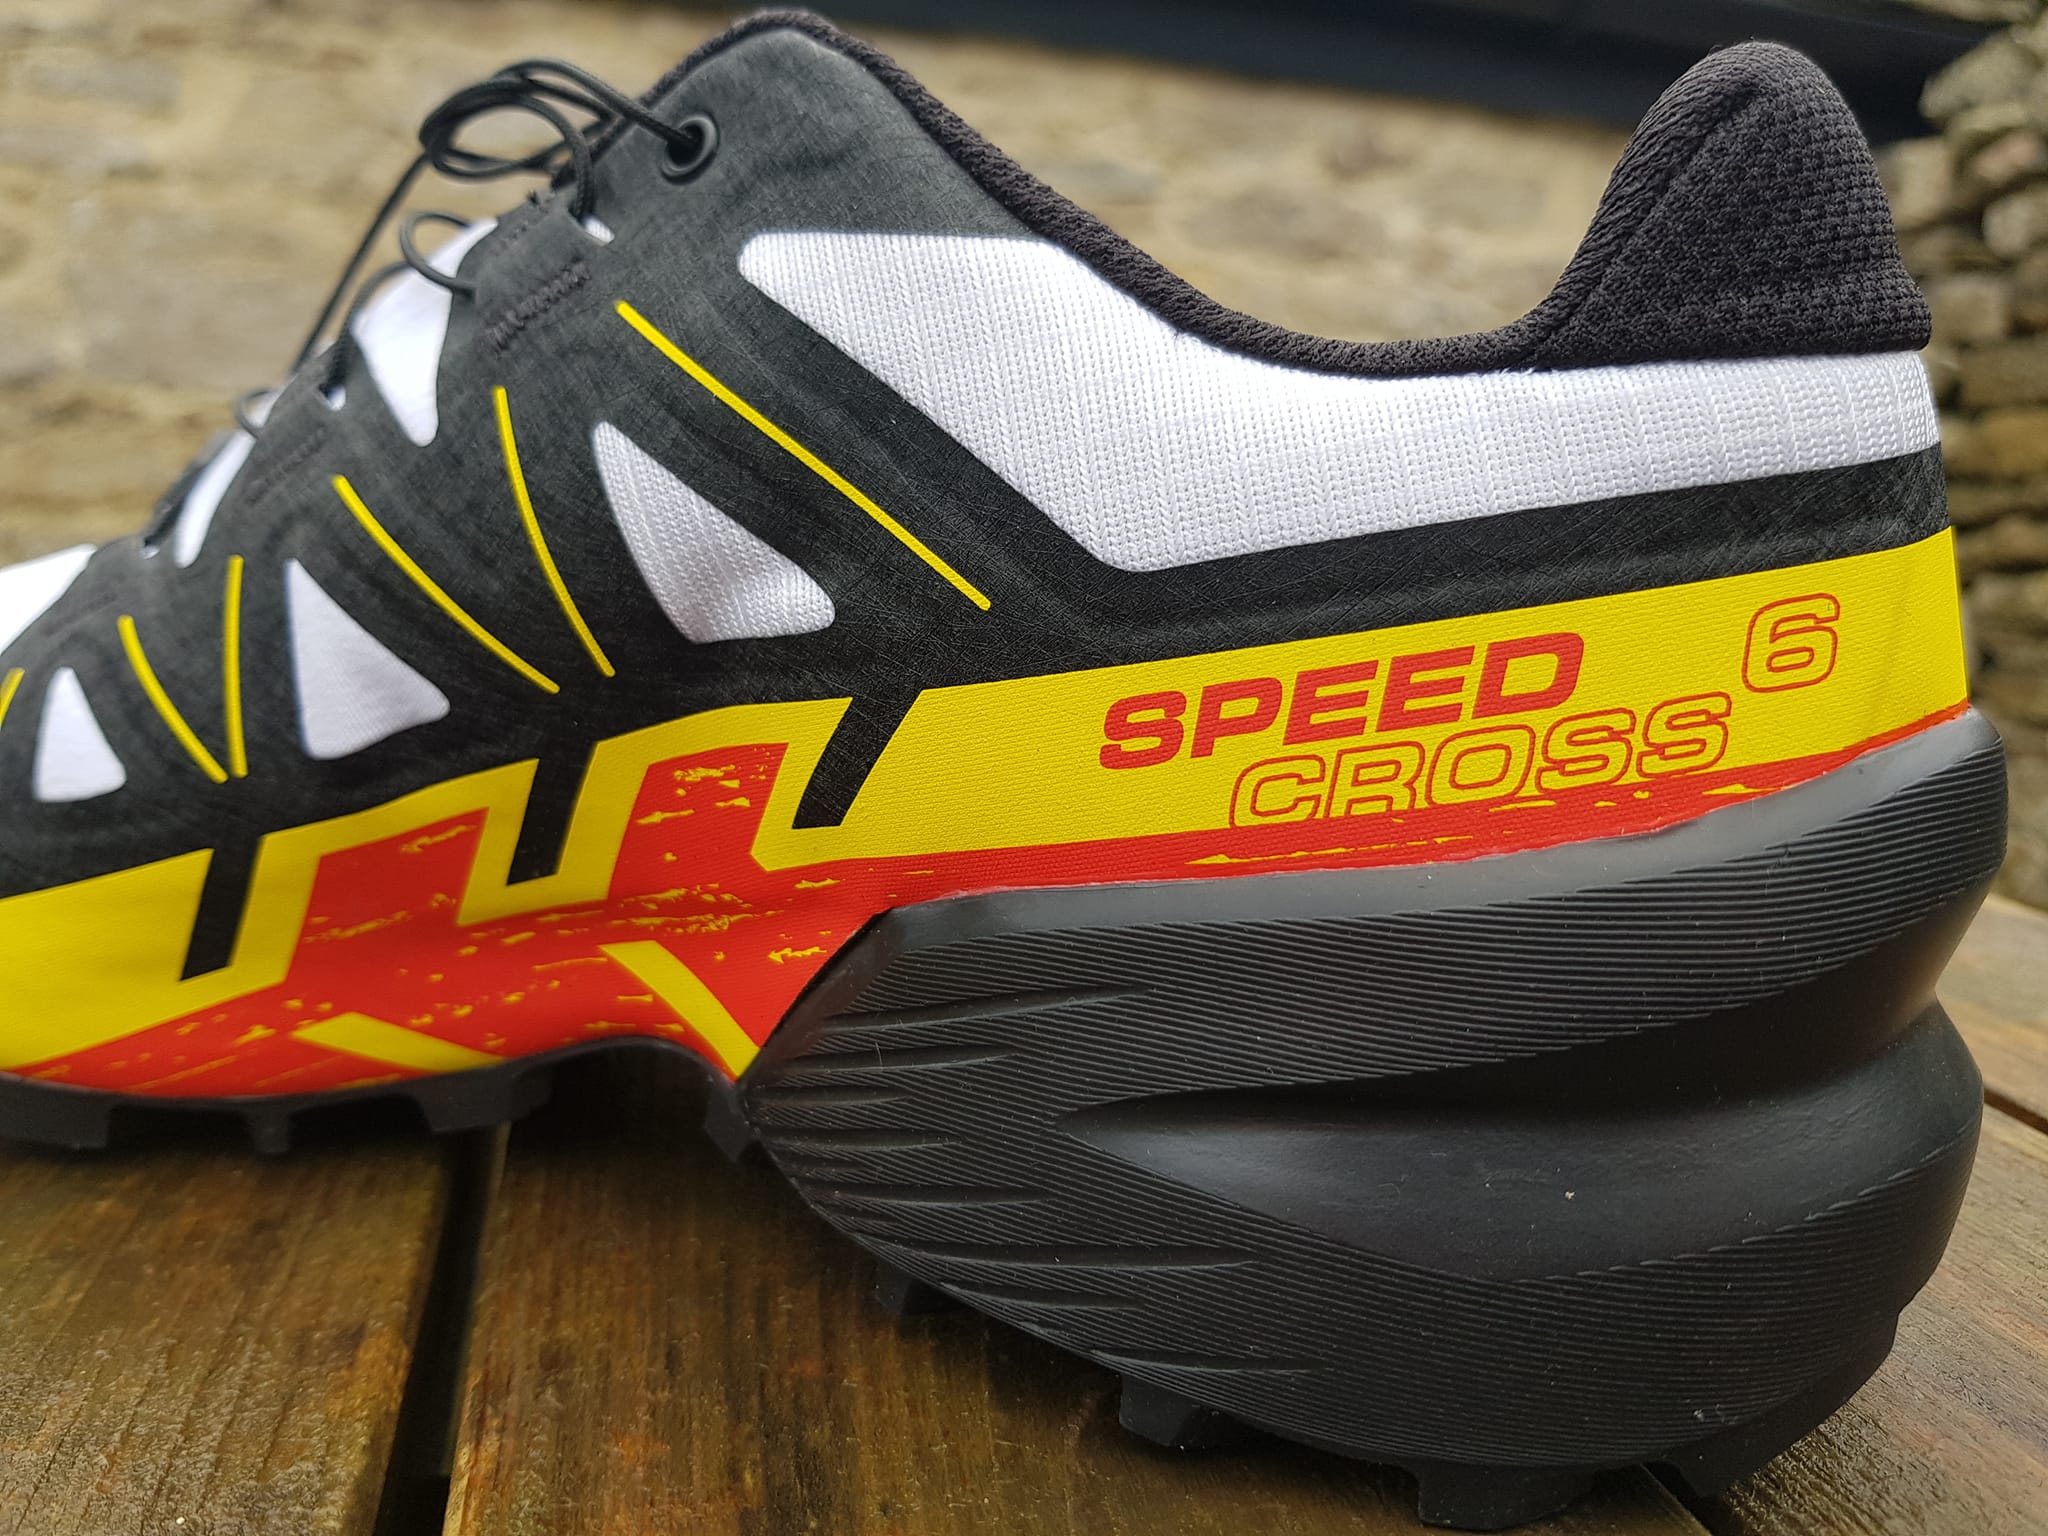 Trail shoes Salomon SPEEDCROSS 6 